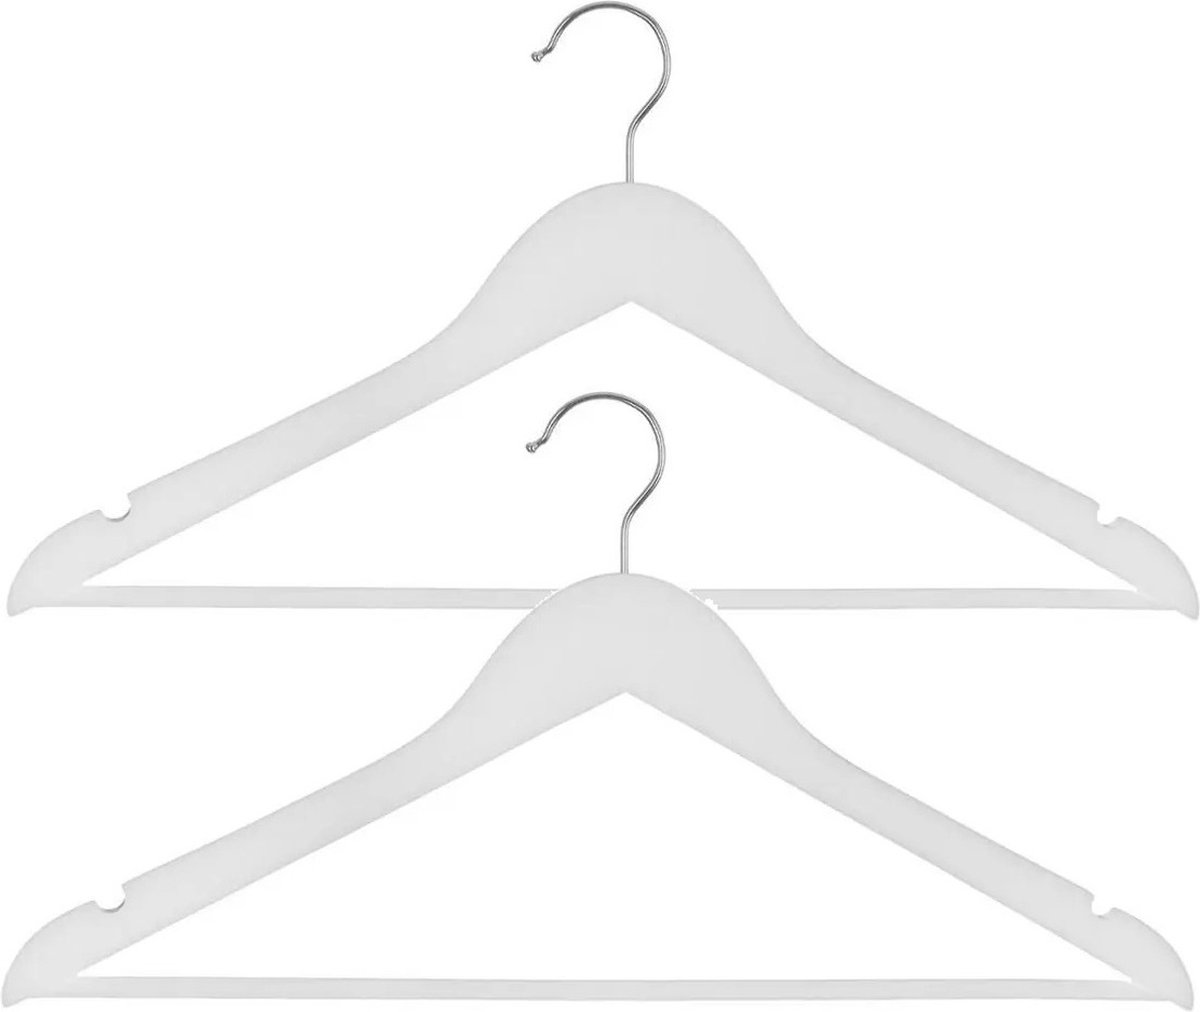 Set van 20x stuks houten kledinghangers wit 44 x 24 cm - Kledingkast hangers/kleerhangers